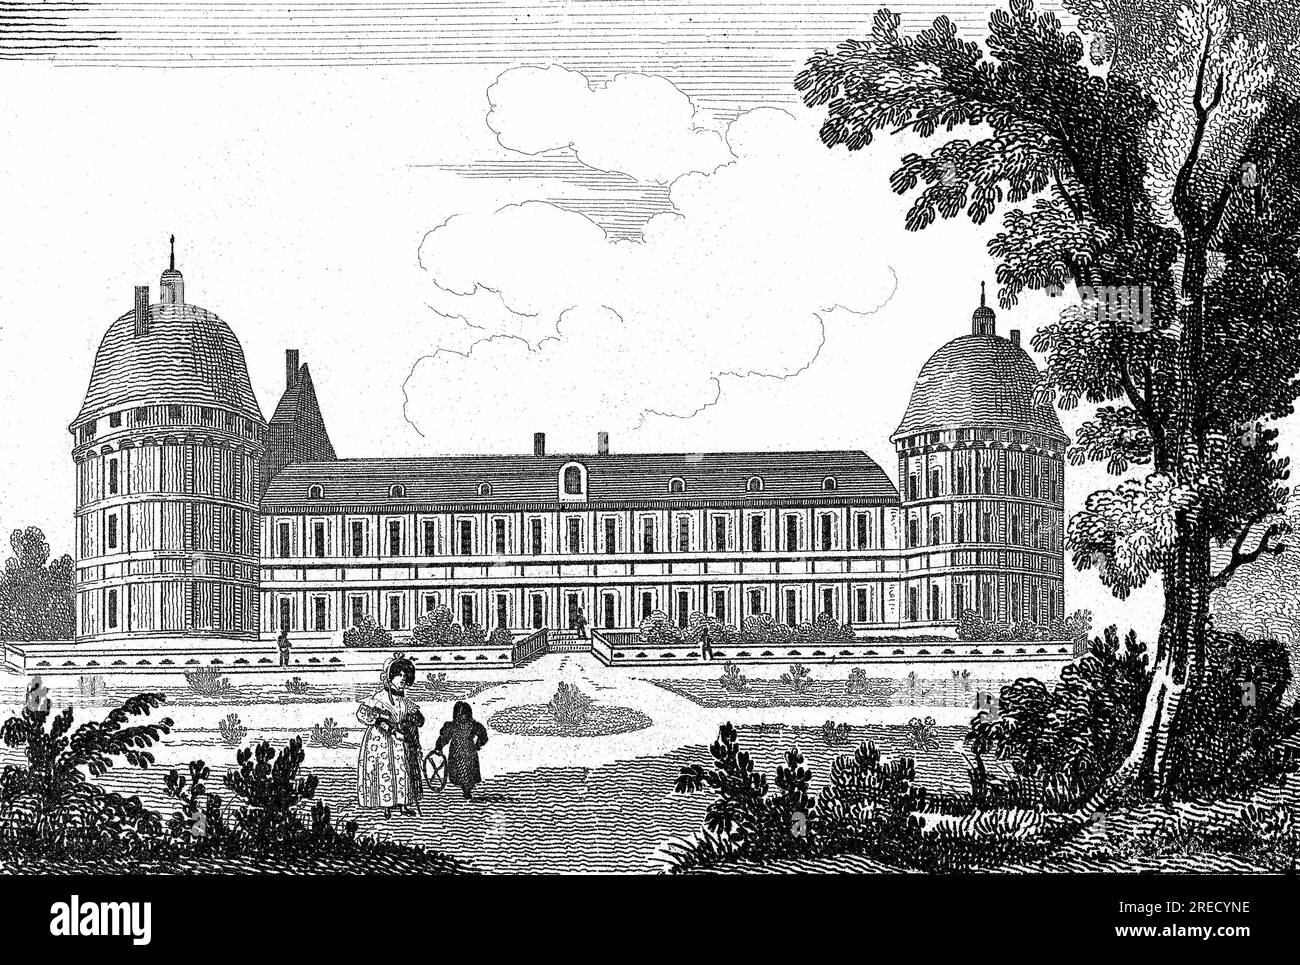 Chateau de la Loire : Vue du chateau de ValenÁay dans le Val-de-Loire (Val de Loire). in 'France Pittoresque', A. Hugo, tome II, 1835. Stock Photo